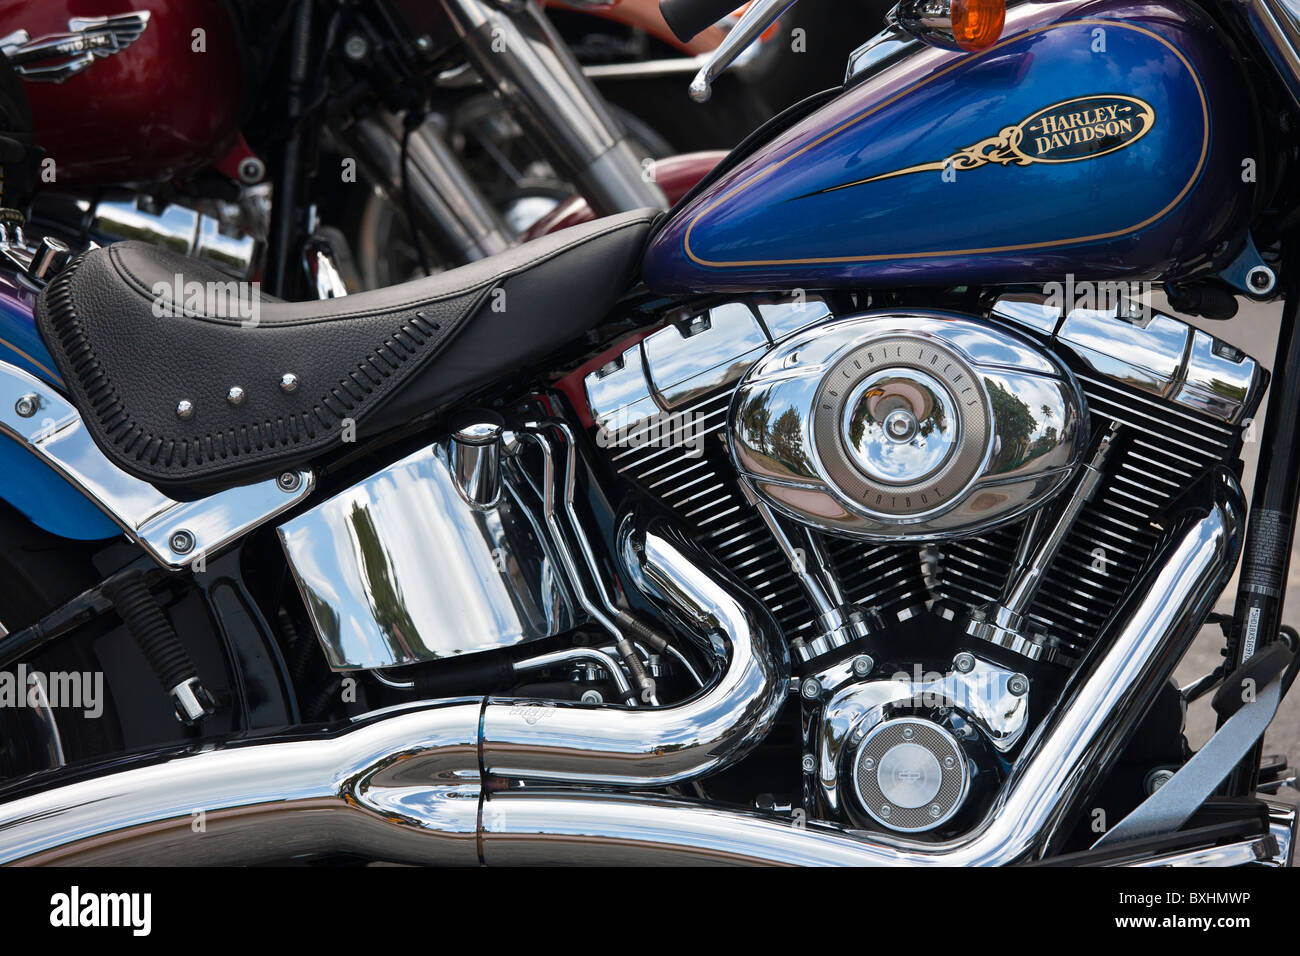 Harley Davidson Fatboy 90 pouces cubes moto moteur à South Beach, Miami, Floride, USA Banque D'Images